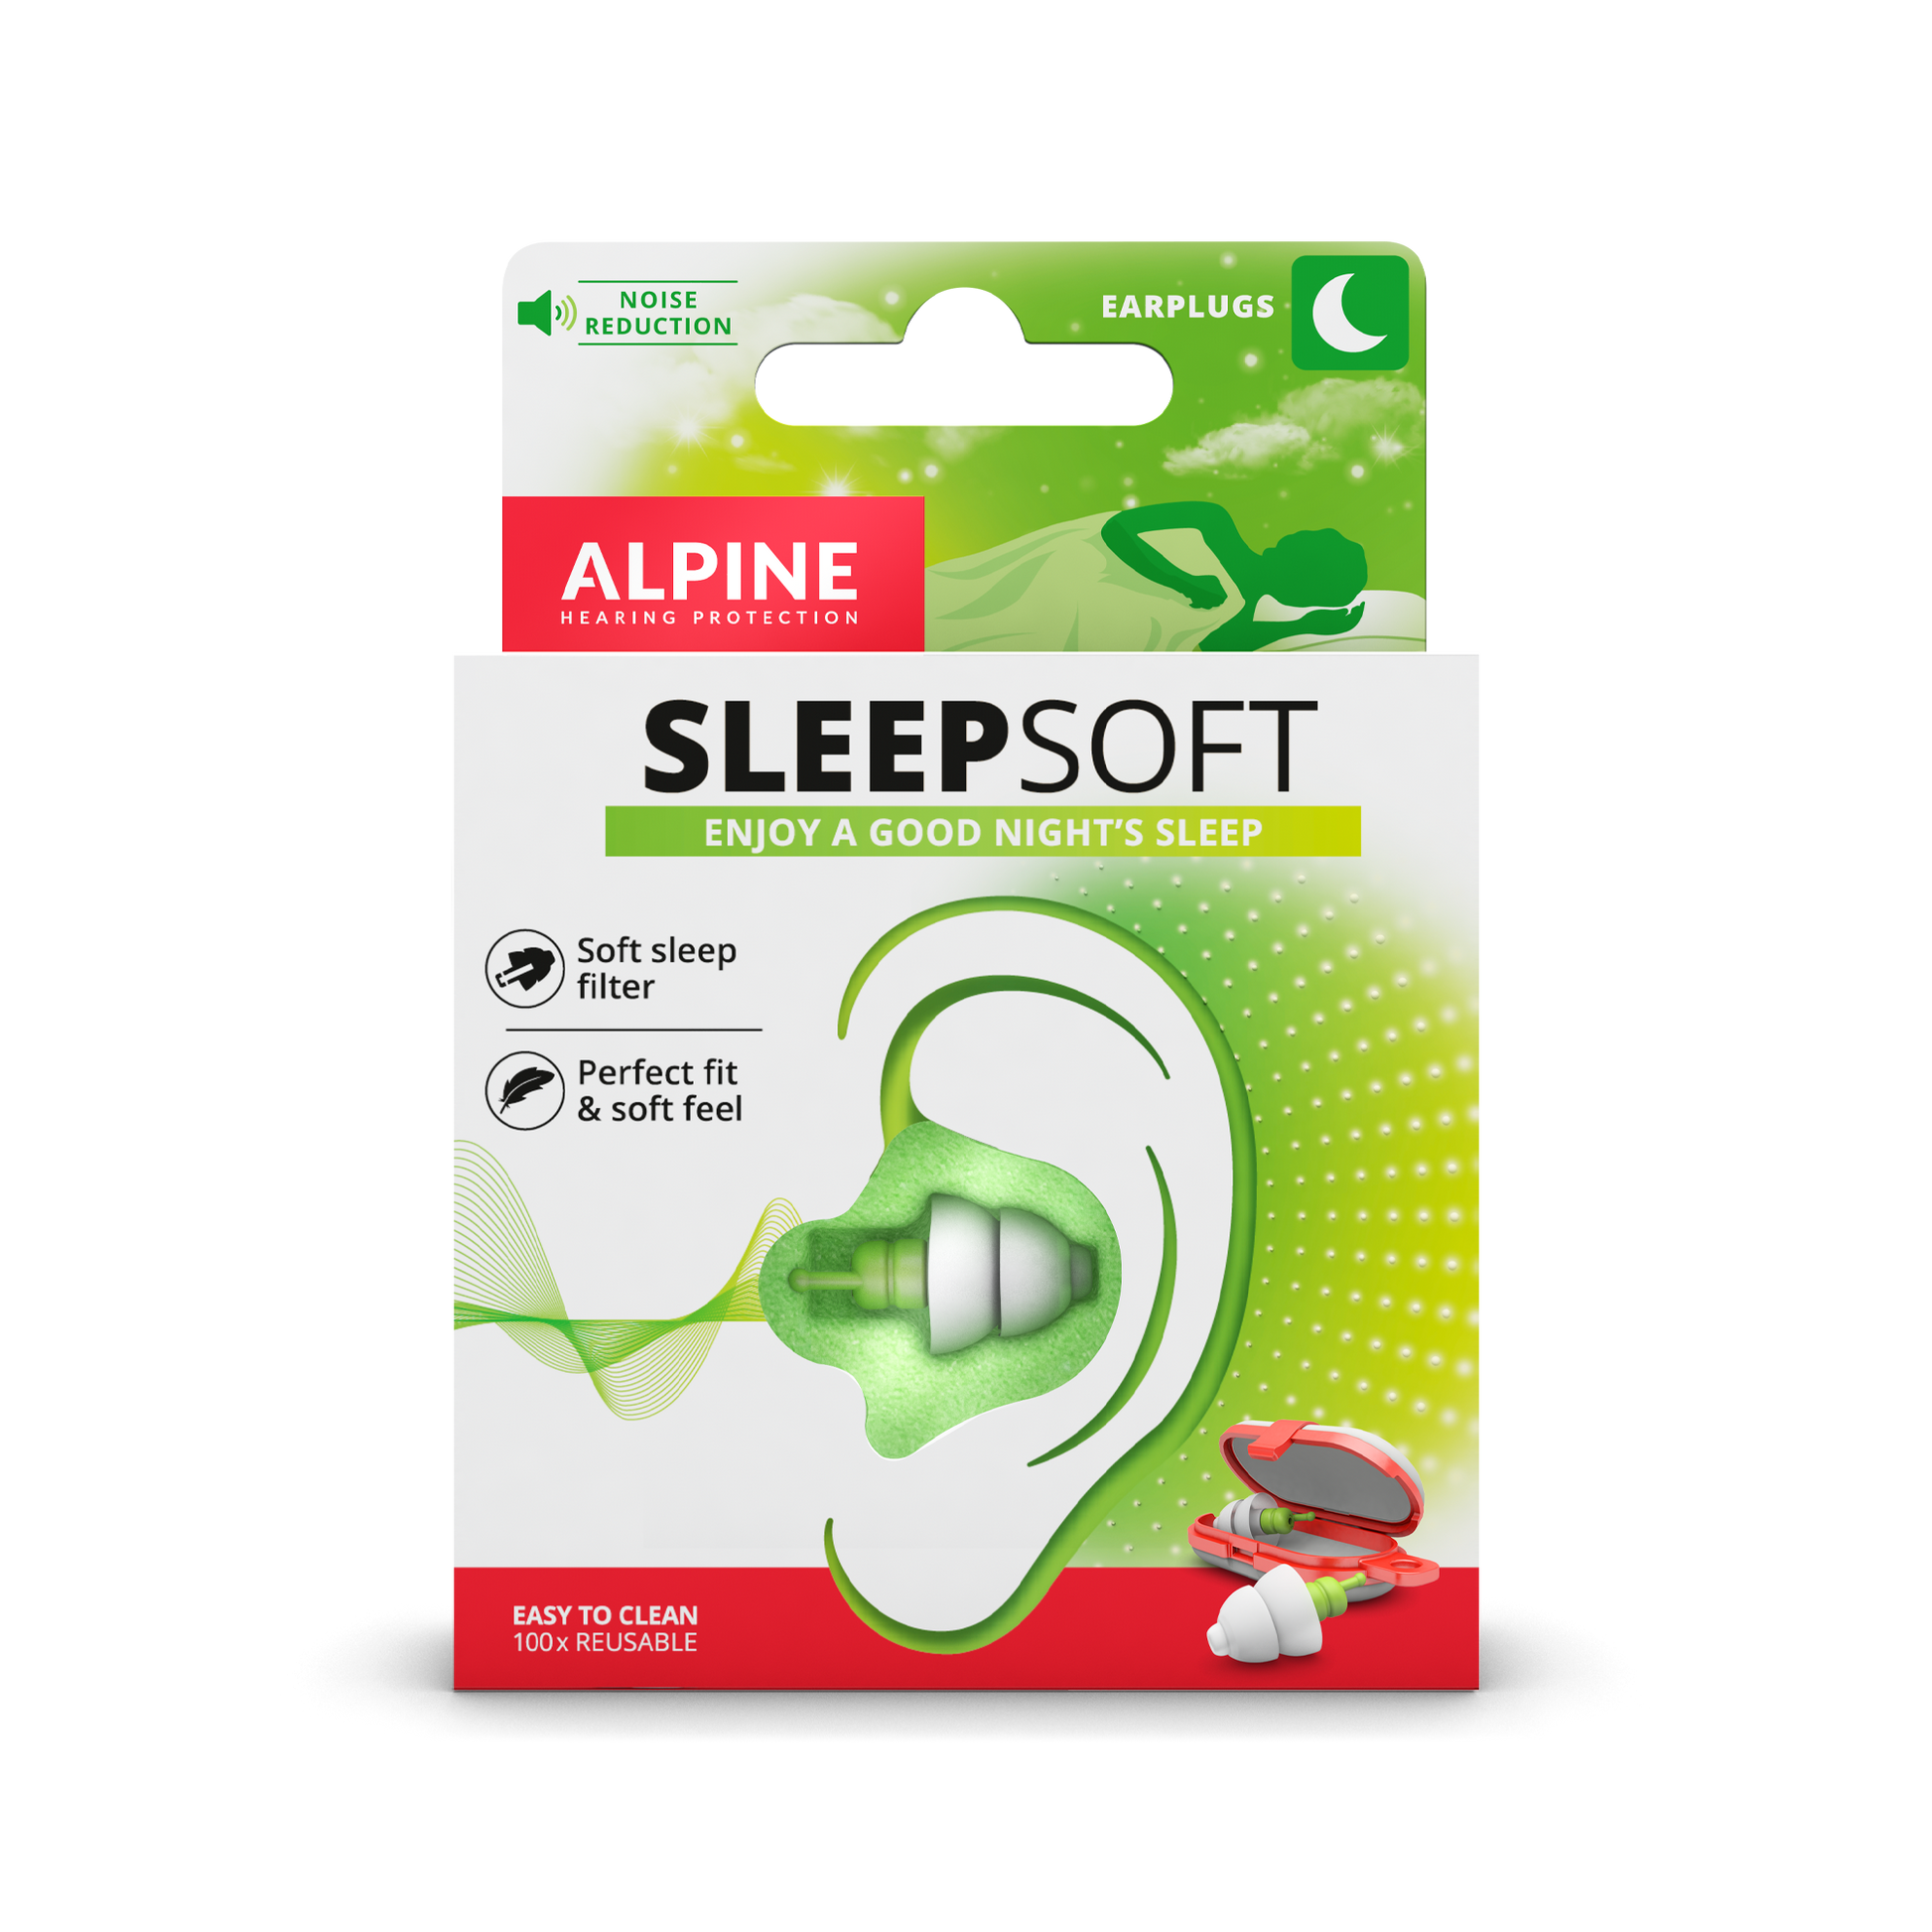 Alpine Sleepdeep earplugs